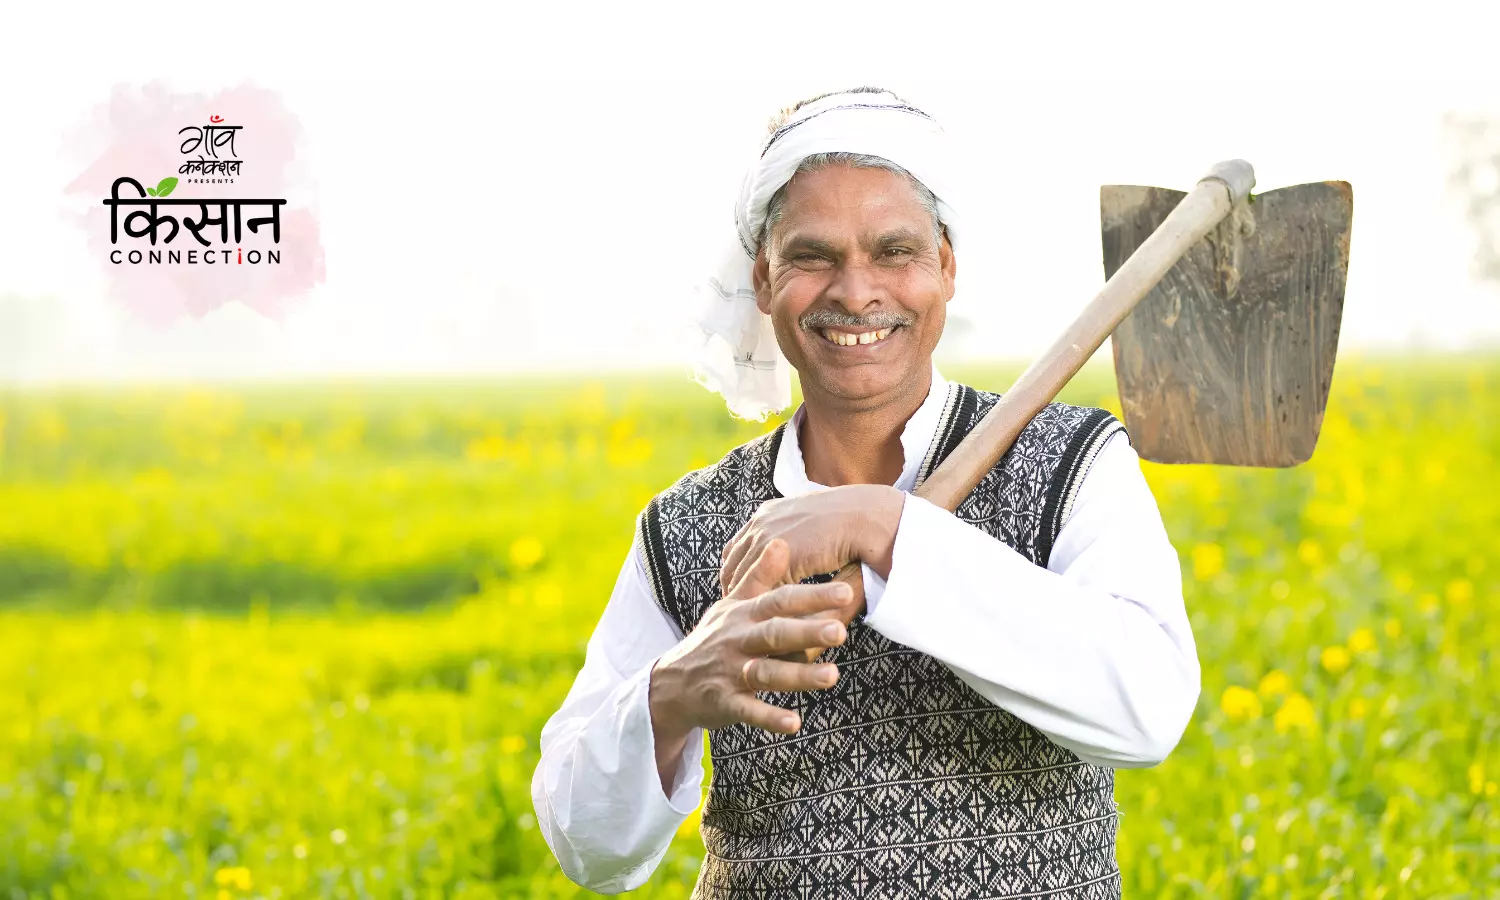 गेहूँ, सरसों जैसी रबी फसलों की अच्छी पैदावार के लिए यूपी सरकार करेगी किसानों की मदद